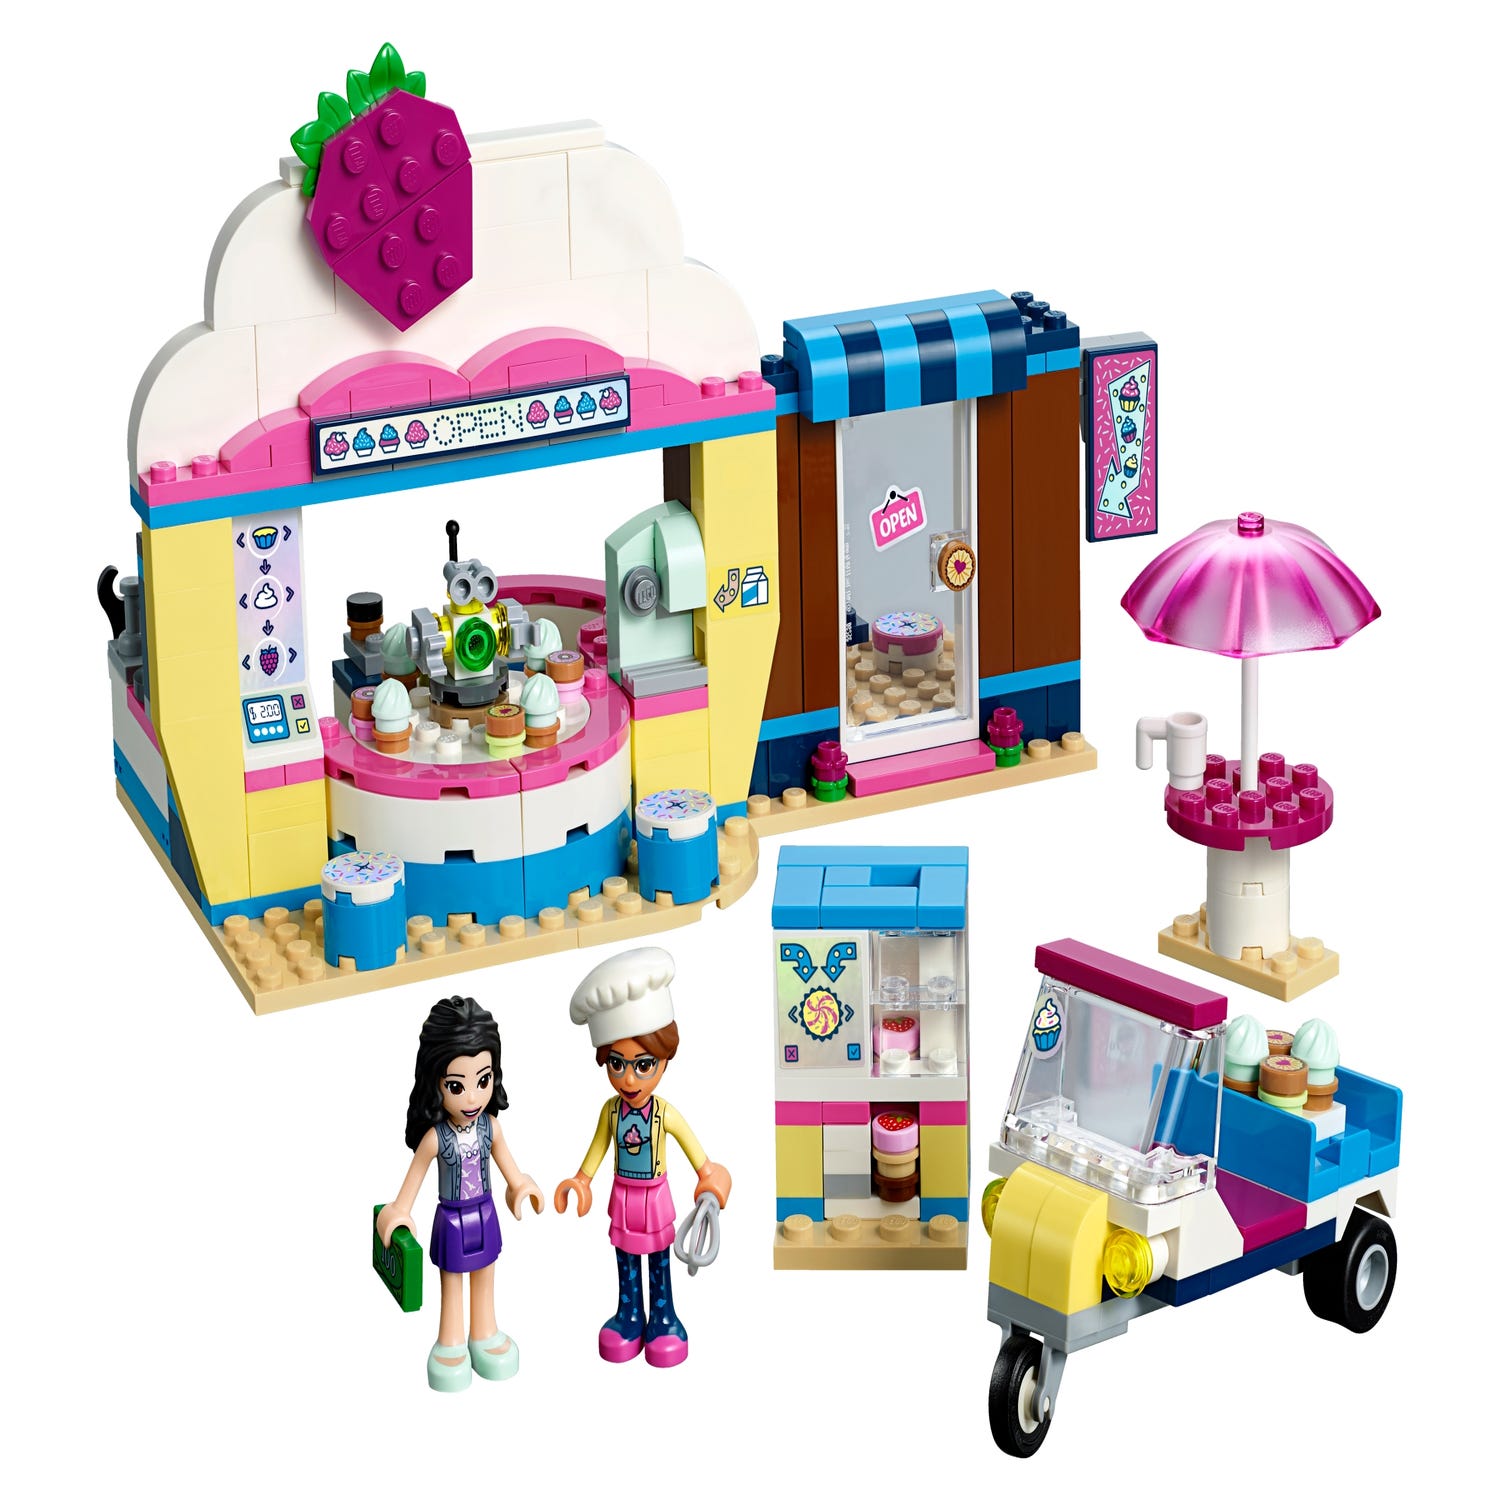 LEGO Friends Olivia's Cupcake Café Building Set - wide 6